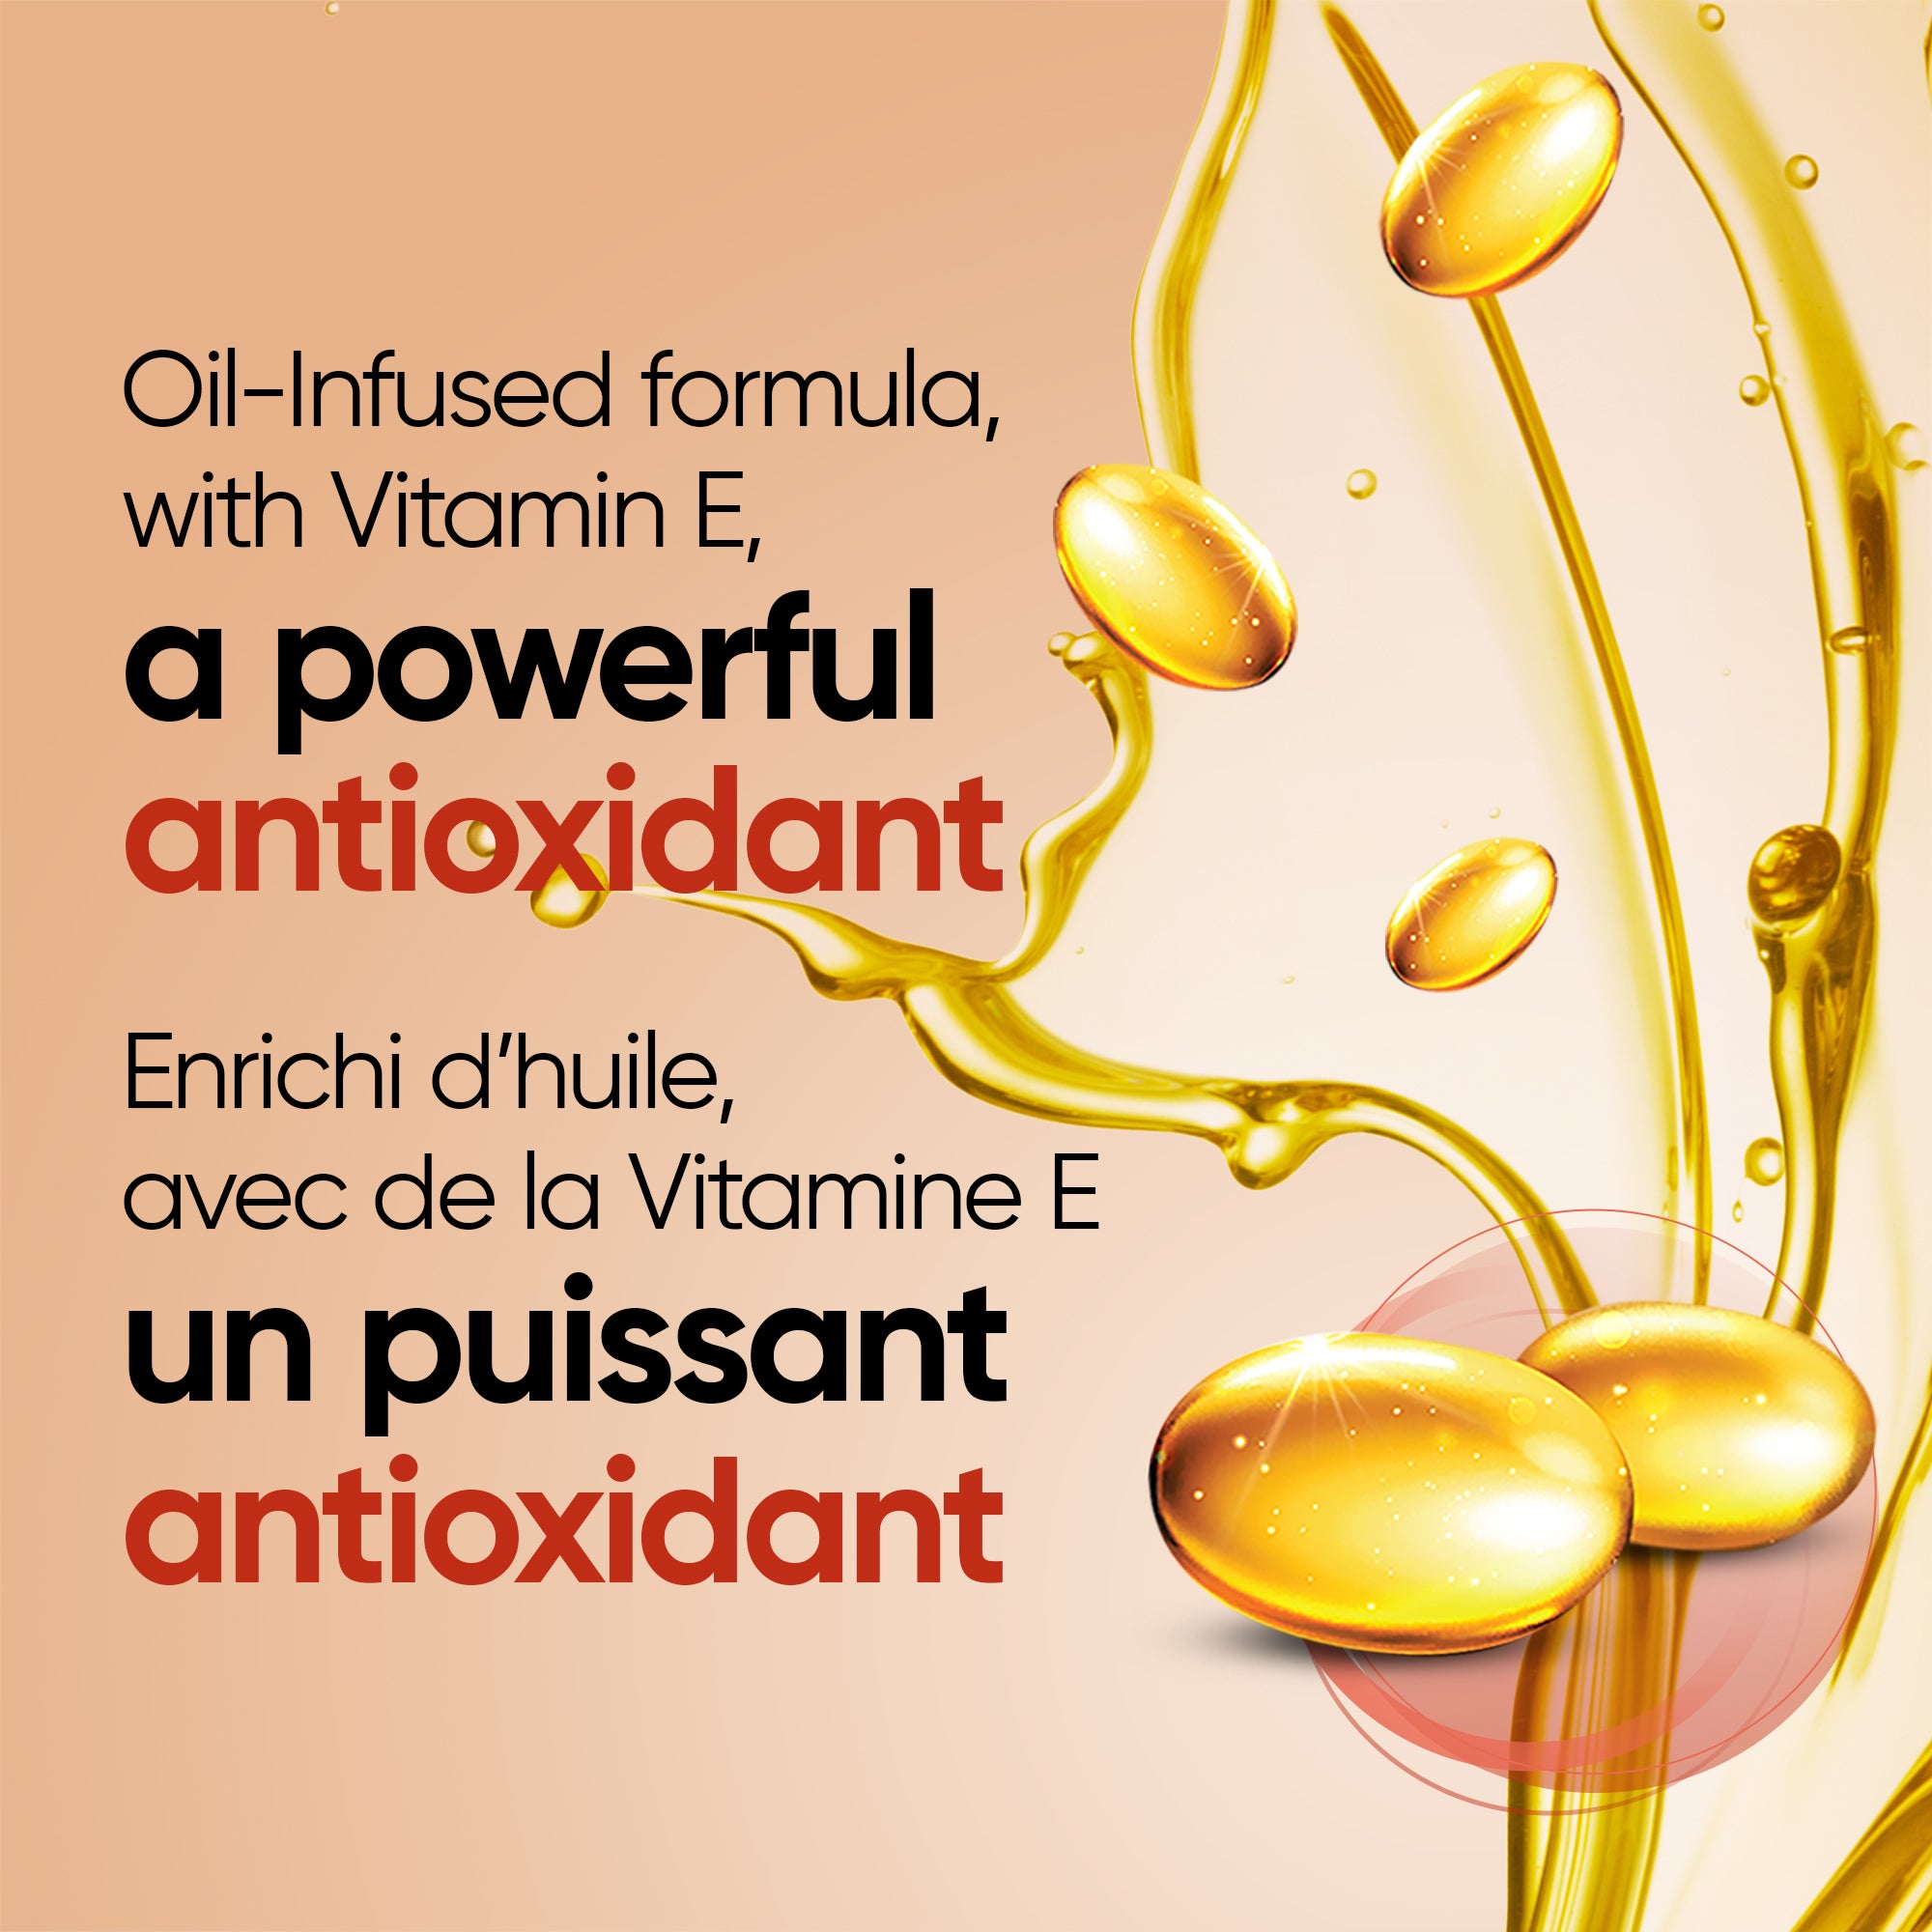 English: Oil-Infused formula, with Vitamin E, a powerful antioxidant. Français: Formule enrichie d’huile, avec vitamine E, un puissant antioxydant.